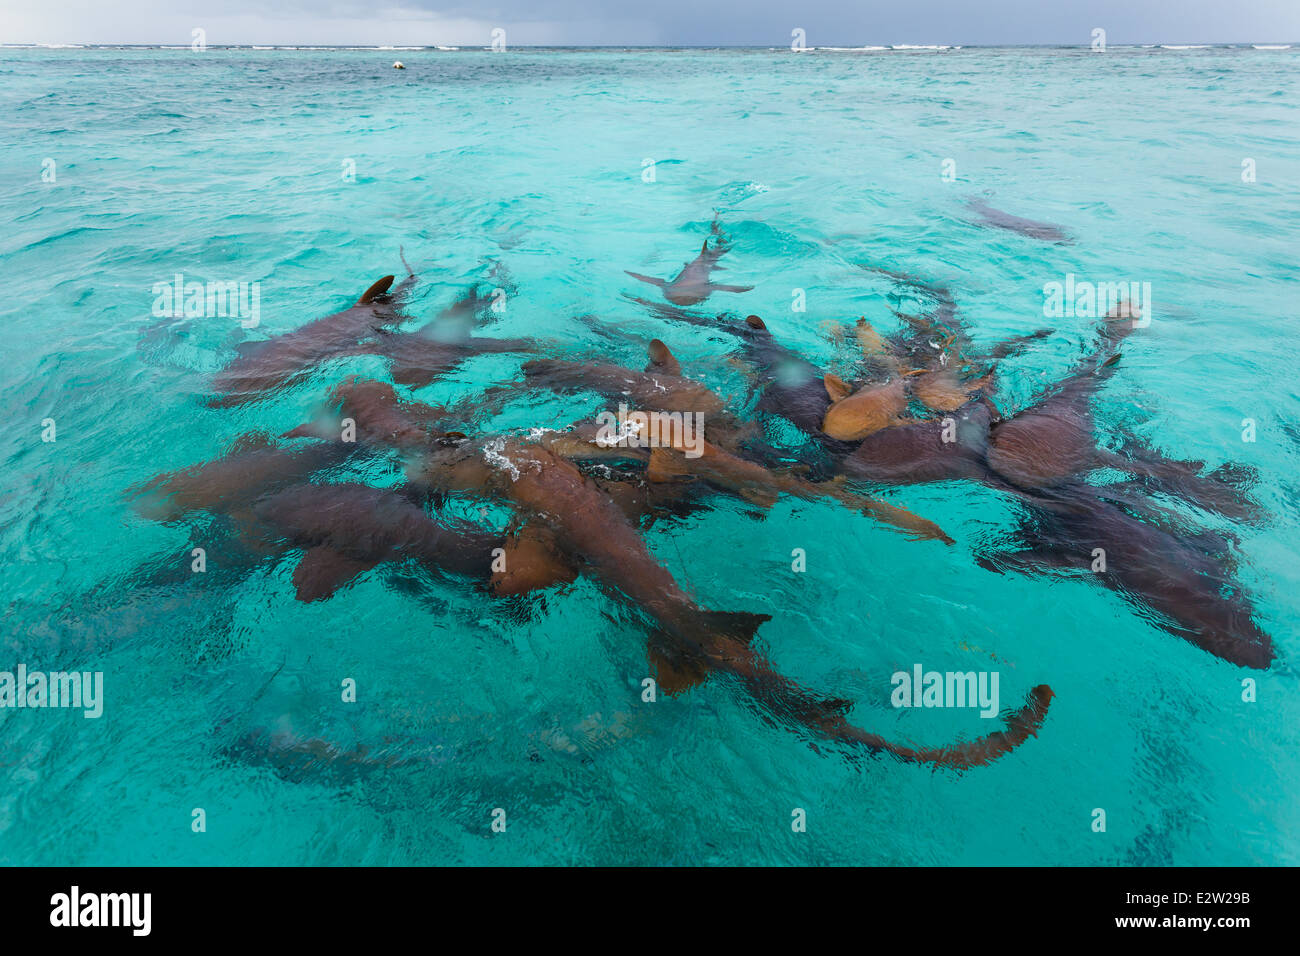 Groupe de requins nourriciers, Ginglymostoma cirratum, en eau peu profonde se nourrissant de déchets provenant de personnes nettoyant des poissons Banque D'Images